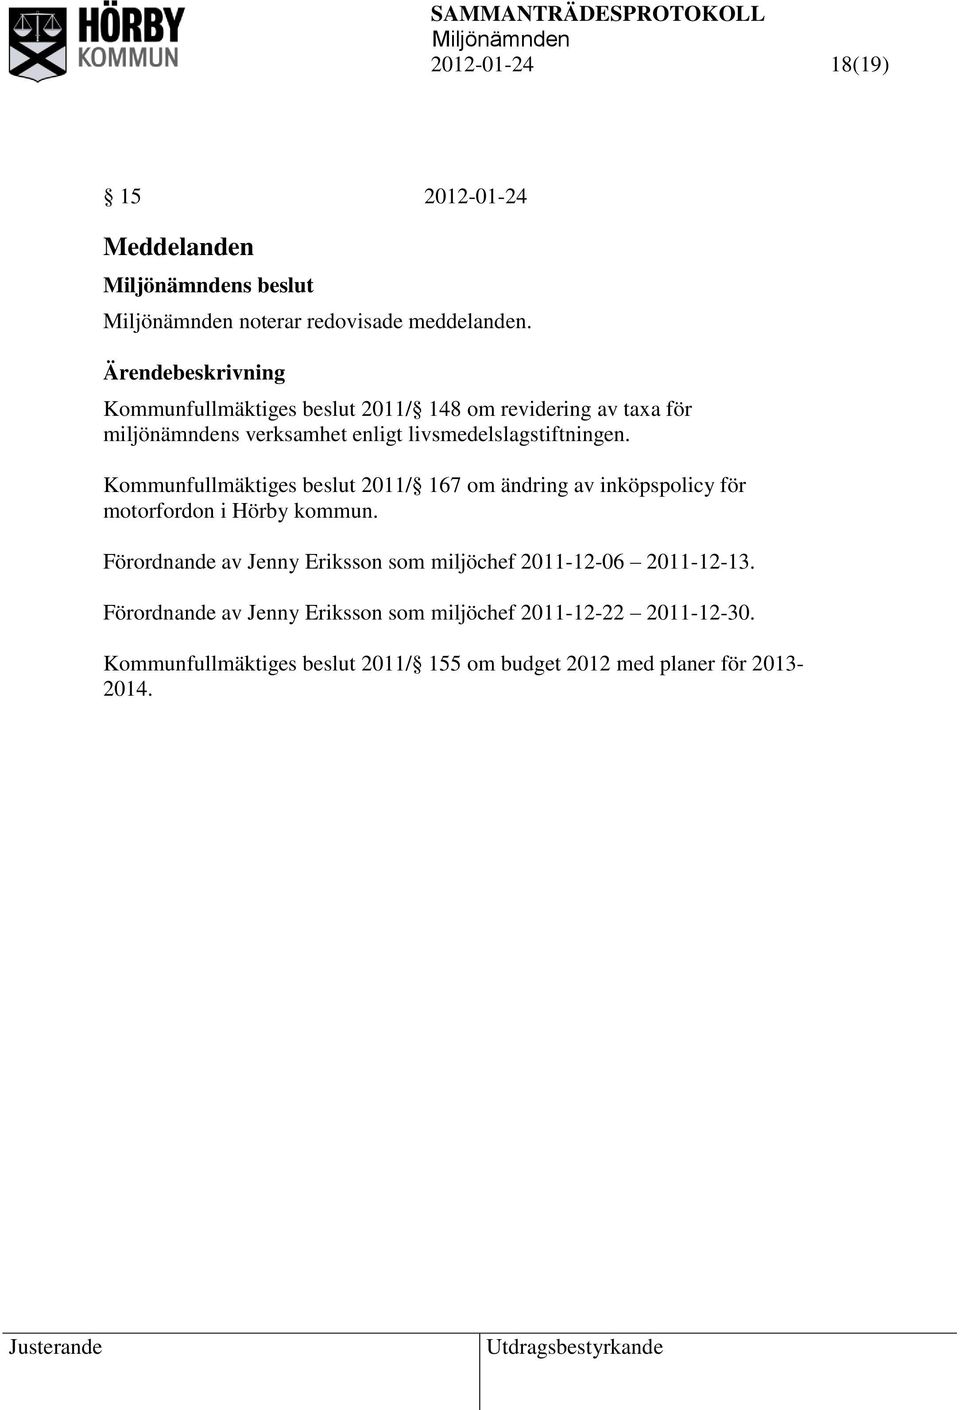 Kommunfullmäktiges beslut 2011/ 167 om ändring av inköpspolicy för motorfordon i Hörby kommun.